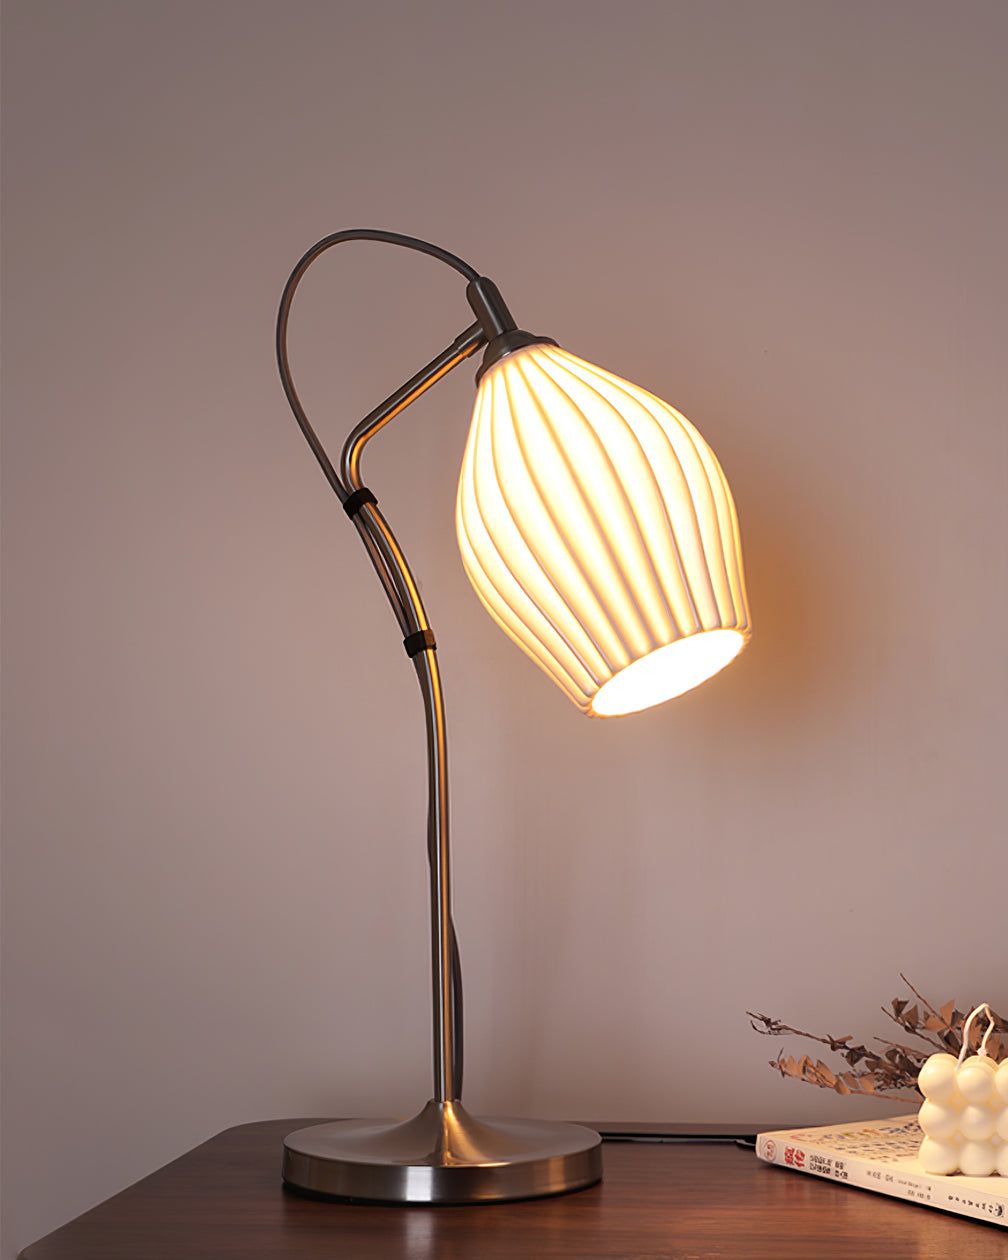 Ceramic Table Lamp Elegant Lighting Option for Any Room